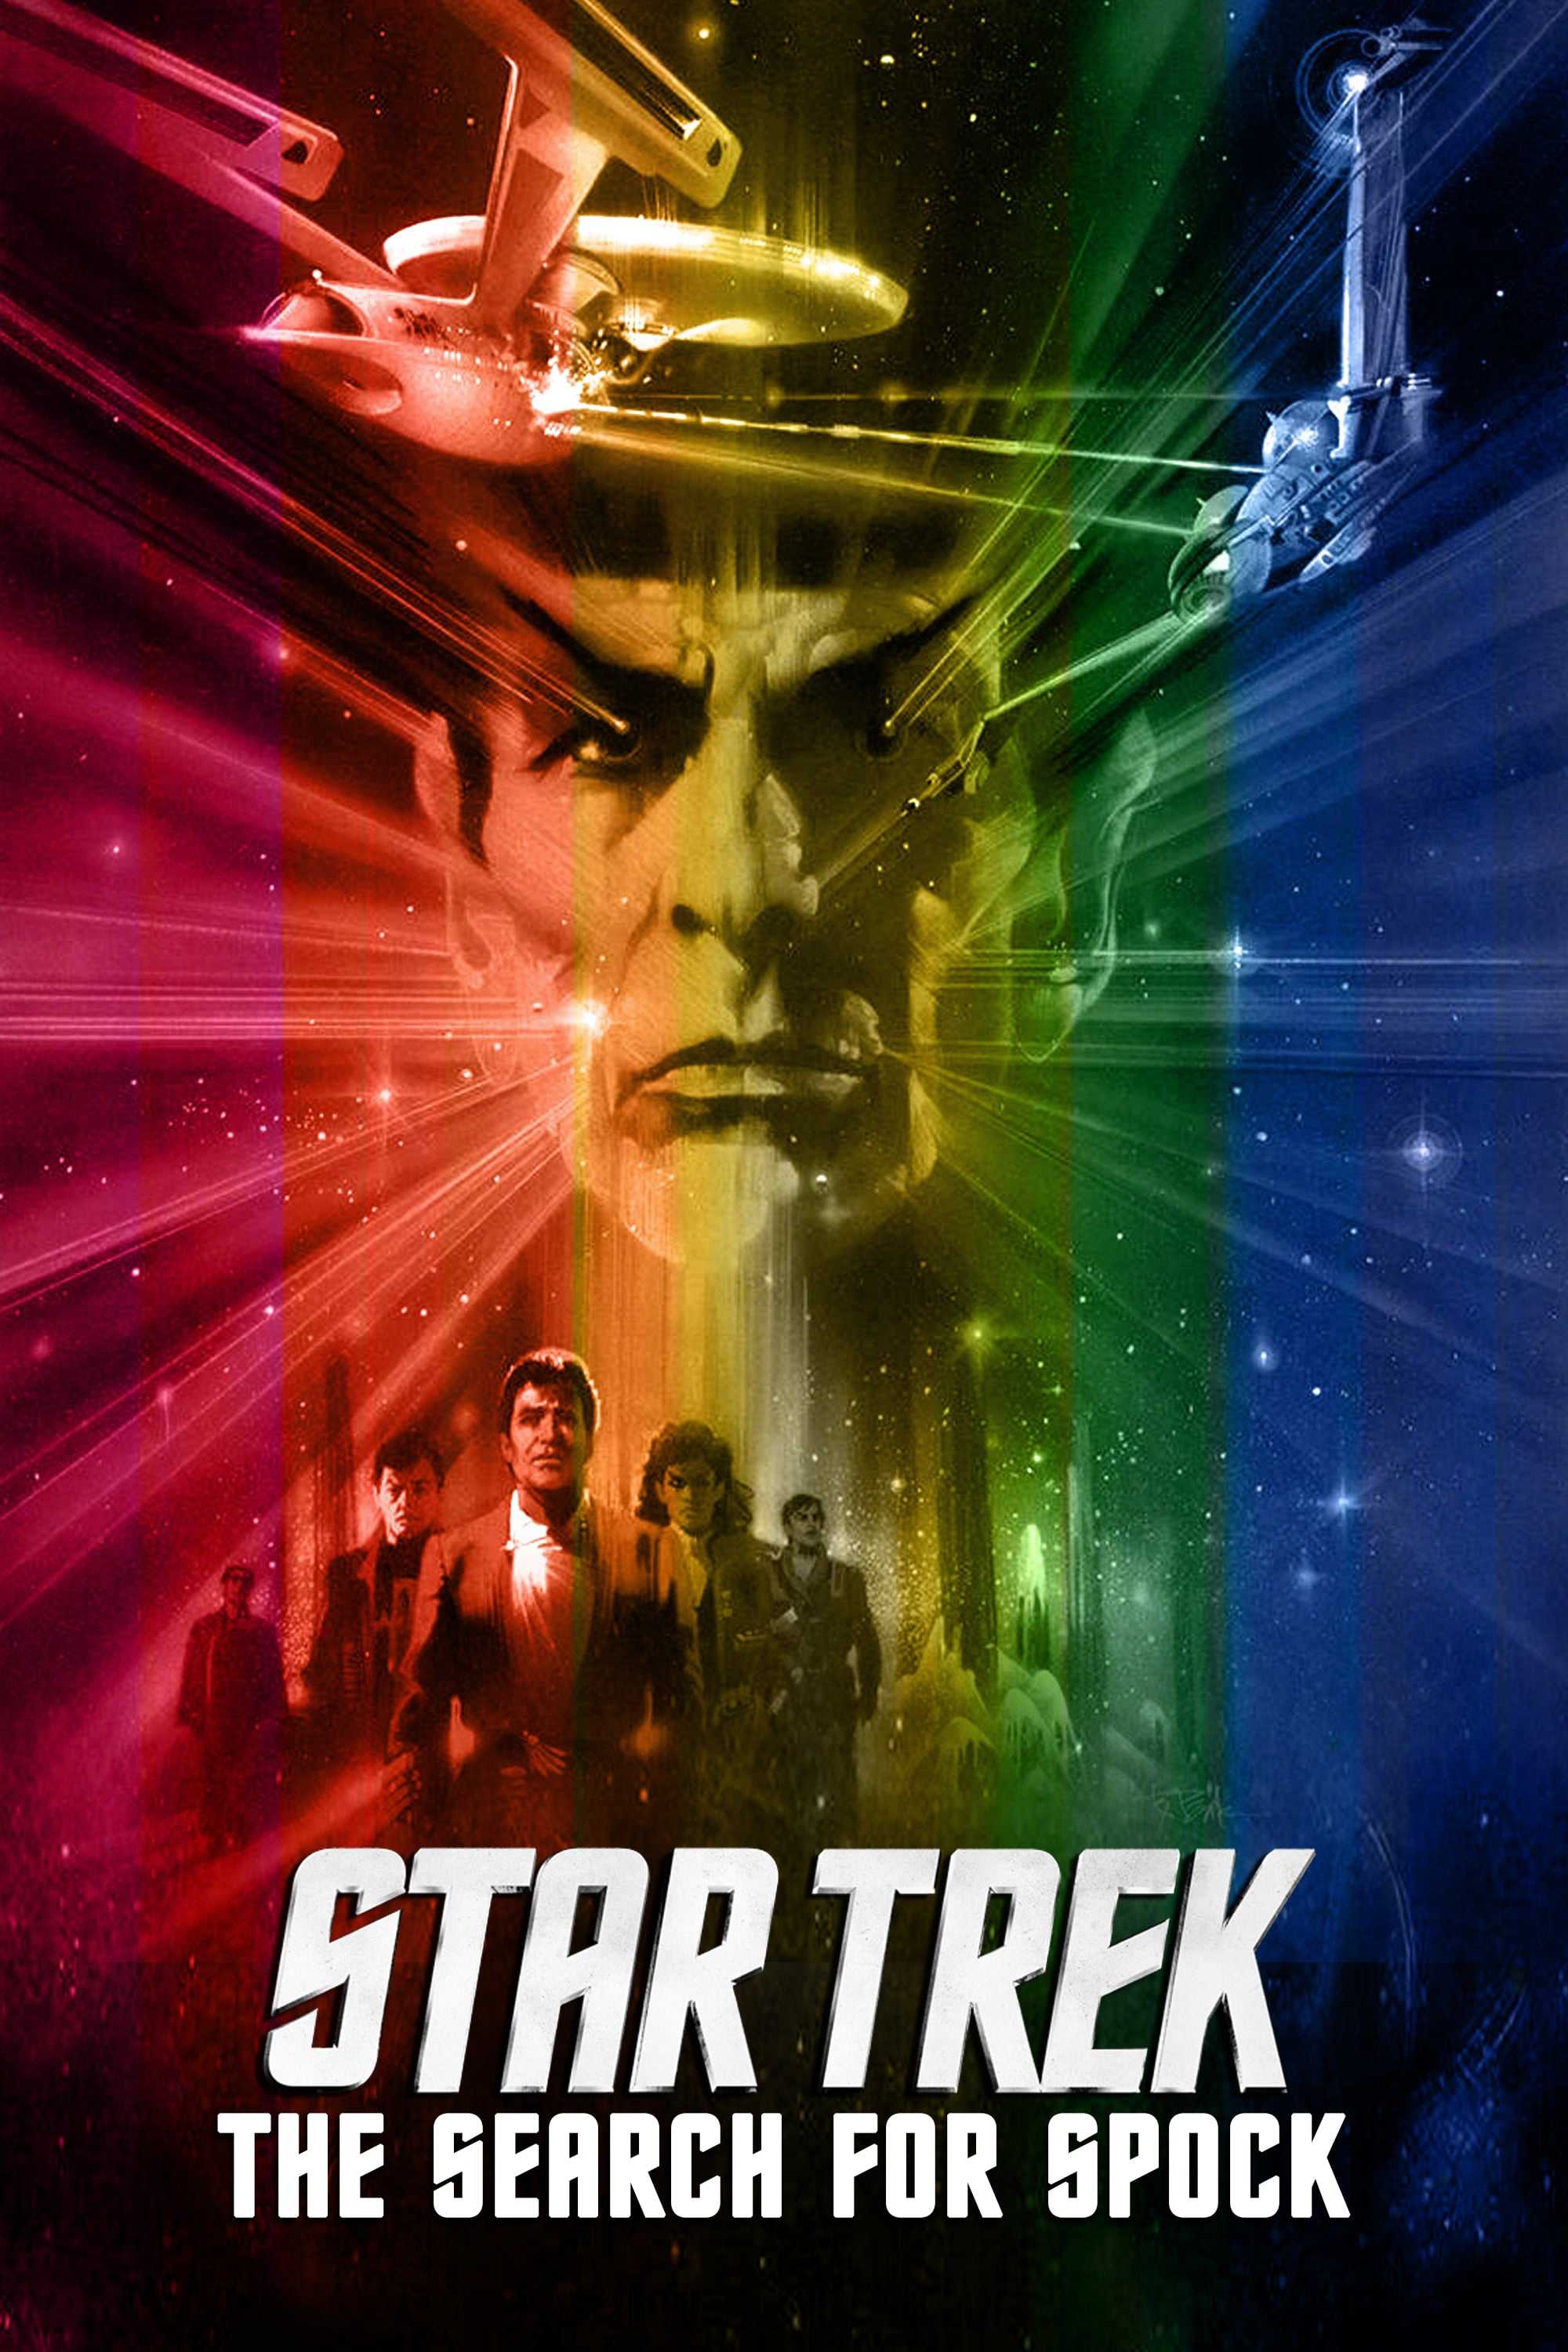 Star trek 3: hành trình đi tìm spock - Star trek iii: the search for spock